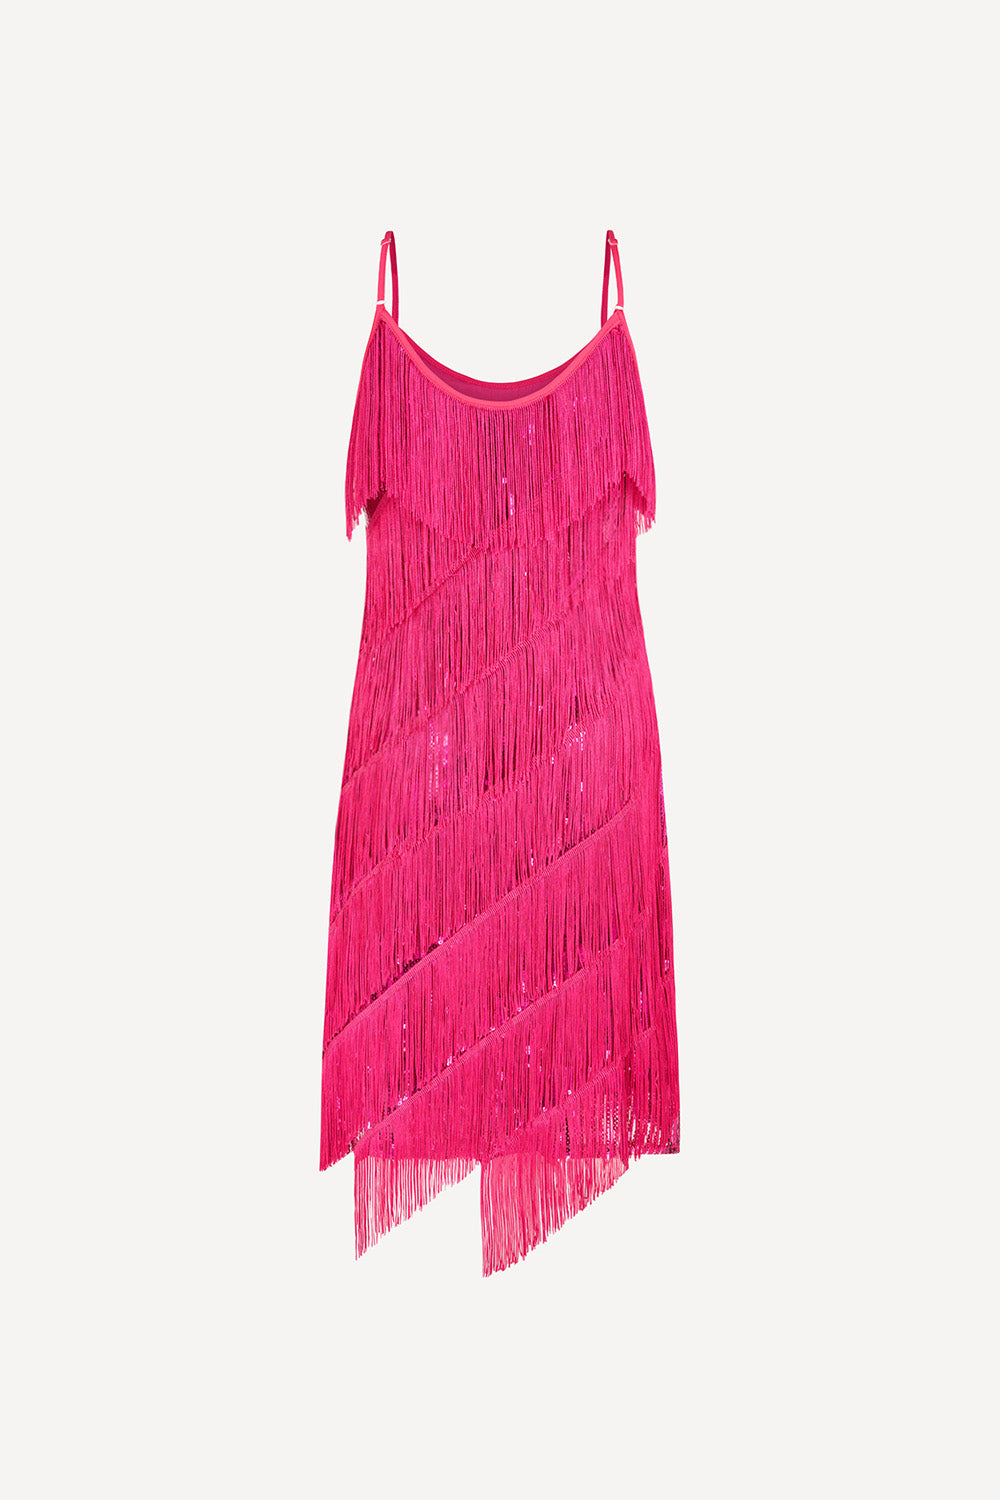 Hundred Watt tassel dress in hot pink